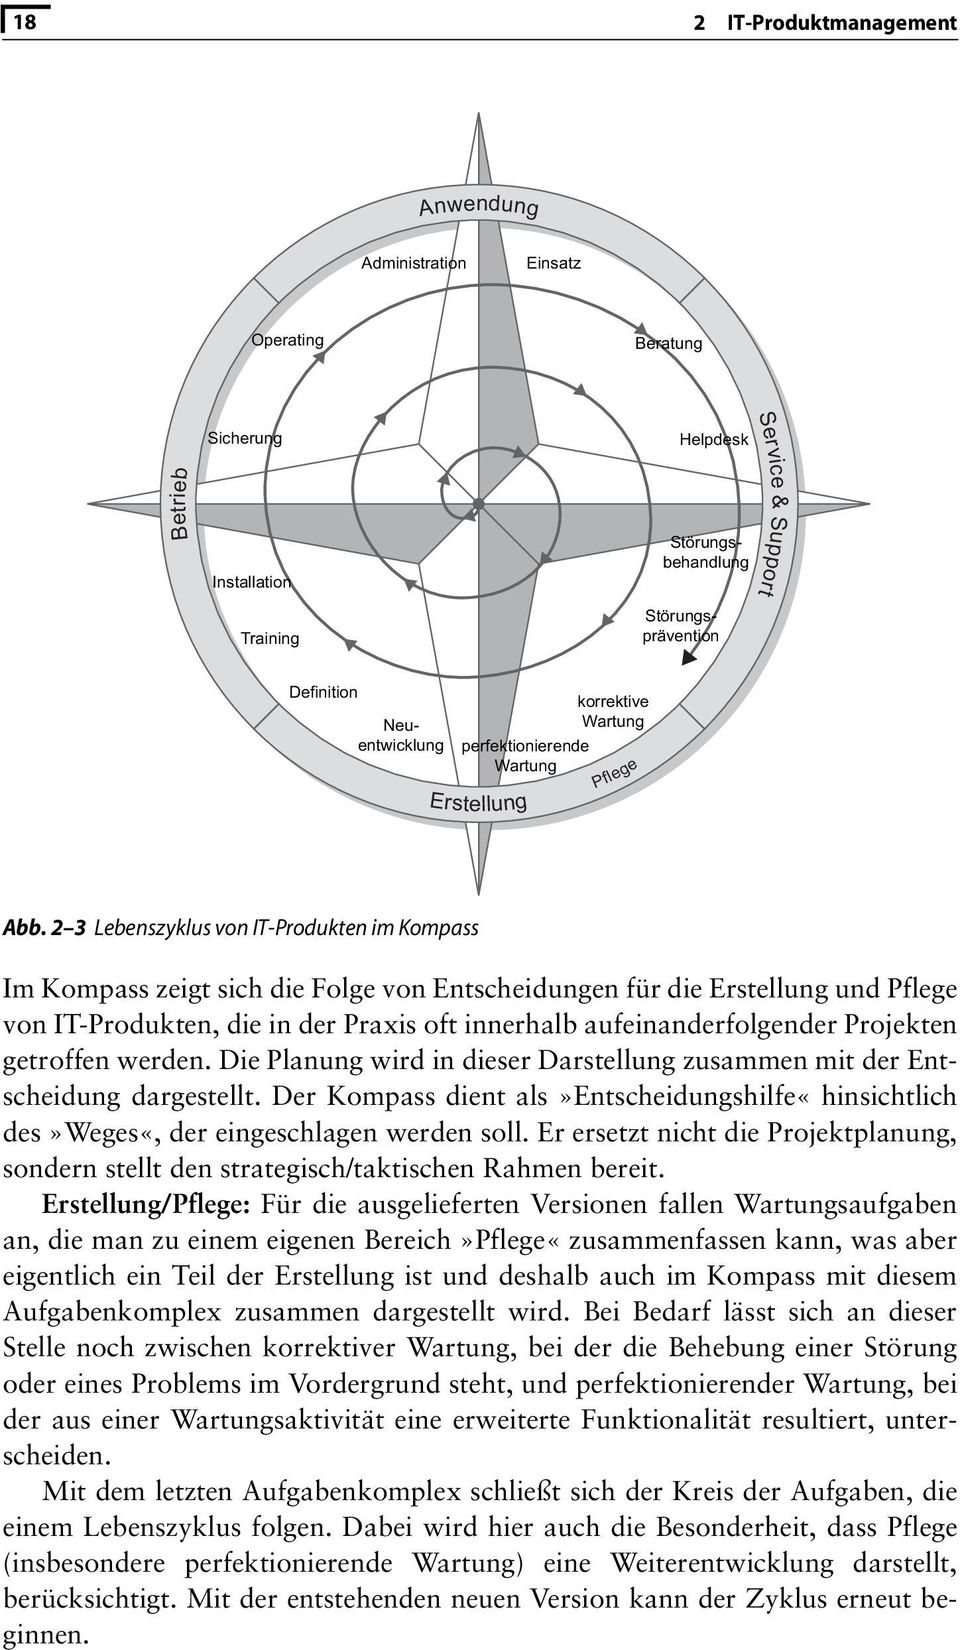 Die Planung wird in dieser Darstellung zusammen mit der Entscheidung dargestellt. Der Kompass dient als»entscheidungshilfe«hinsichtlich des»weges«, der eingeschlagen werden soll.